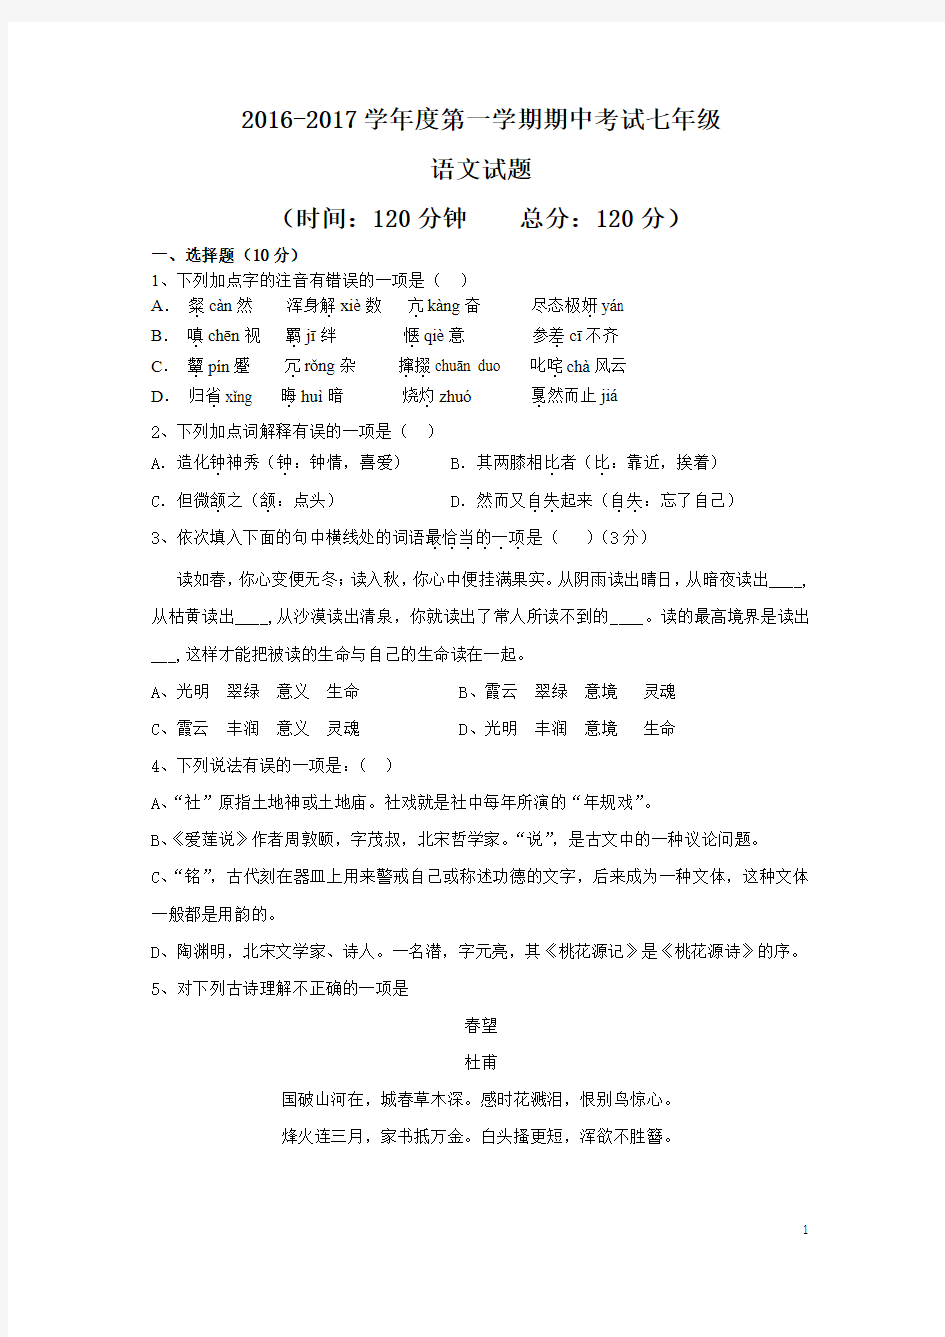 2016年11月陈毅中学七年级(上)期中考试